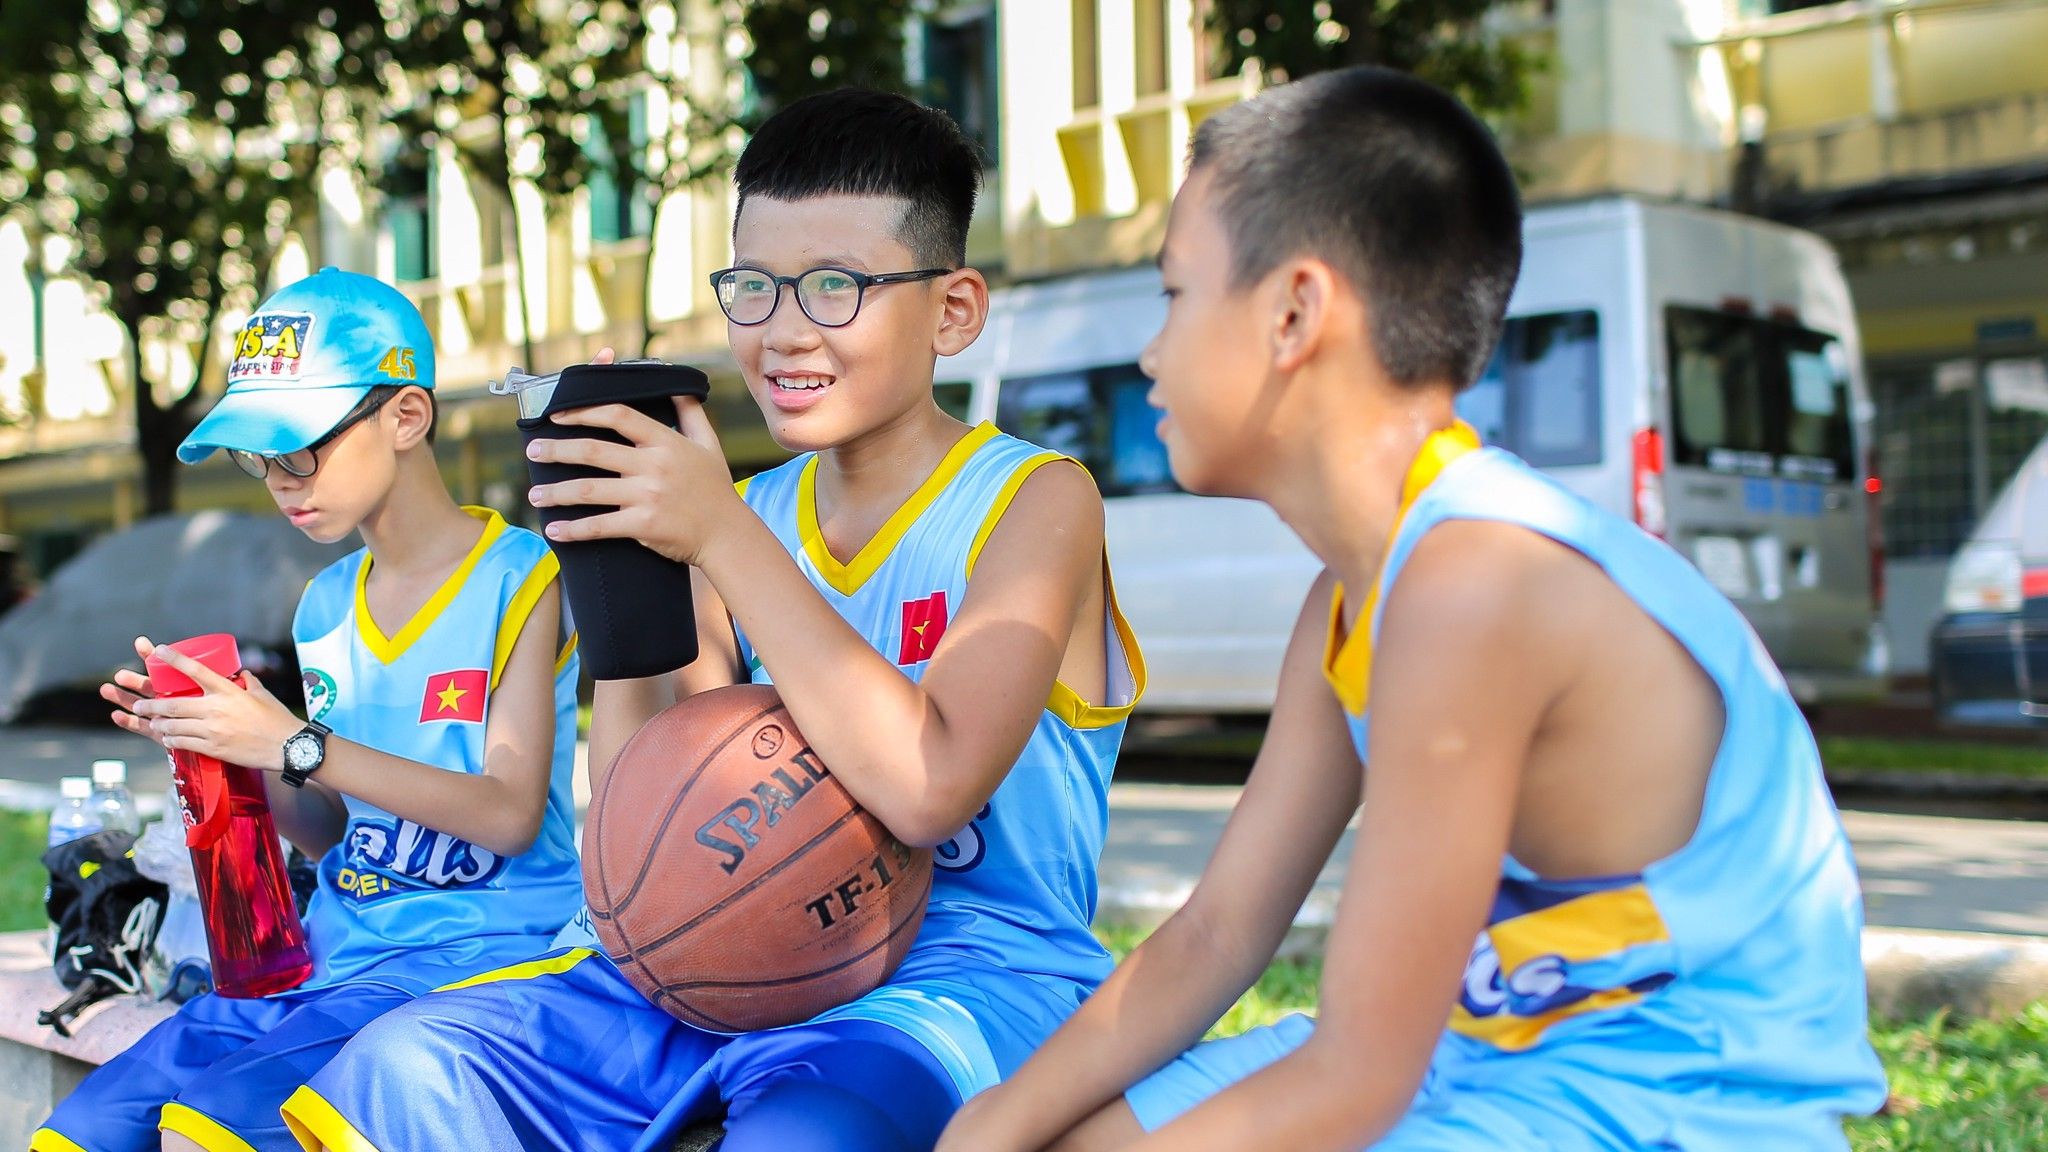 học viện bóng rổ uy tín dành cho trẻ em tại tphcm